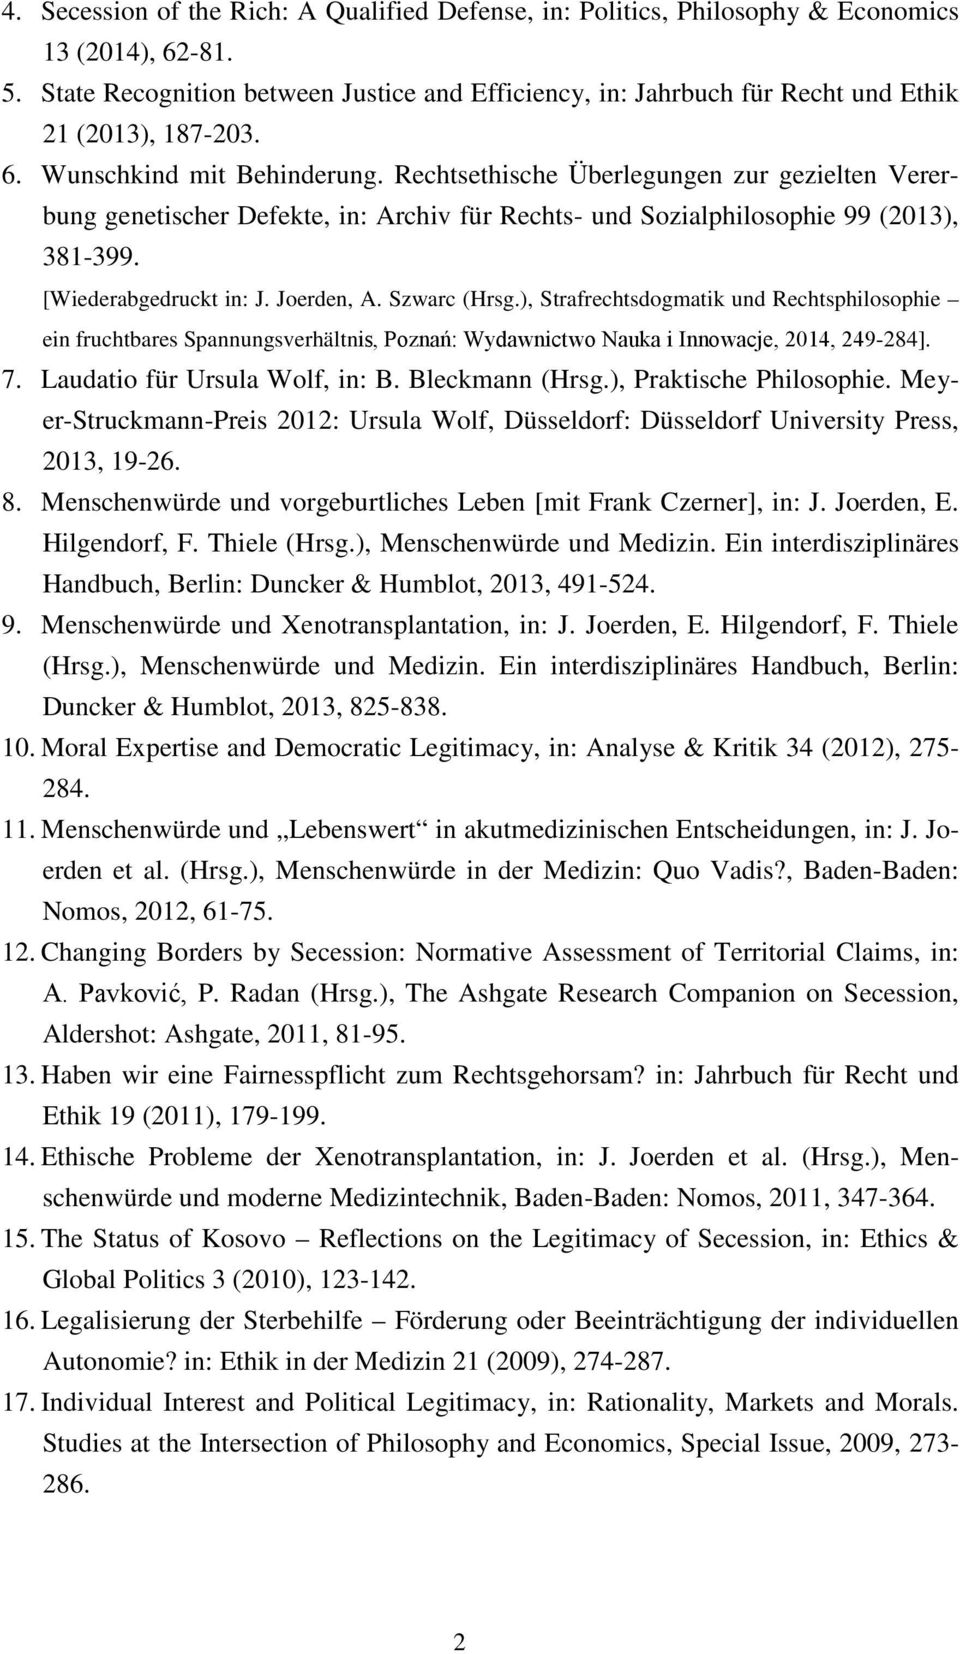 Rechtsethische Überlegungen zur gezielten Vererbung genetischer Defekte, in: Archiv für Rechts- und Sozialphilosophie 99 (2013), 381-399. [Wiederabgedruckt in: J. Joerden, A. Szwarc (Hrsg.